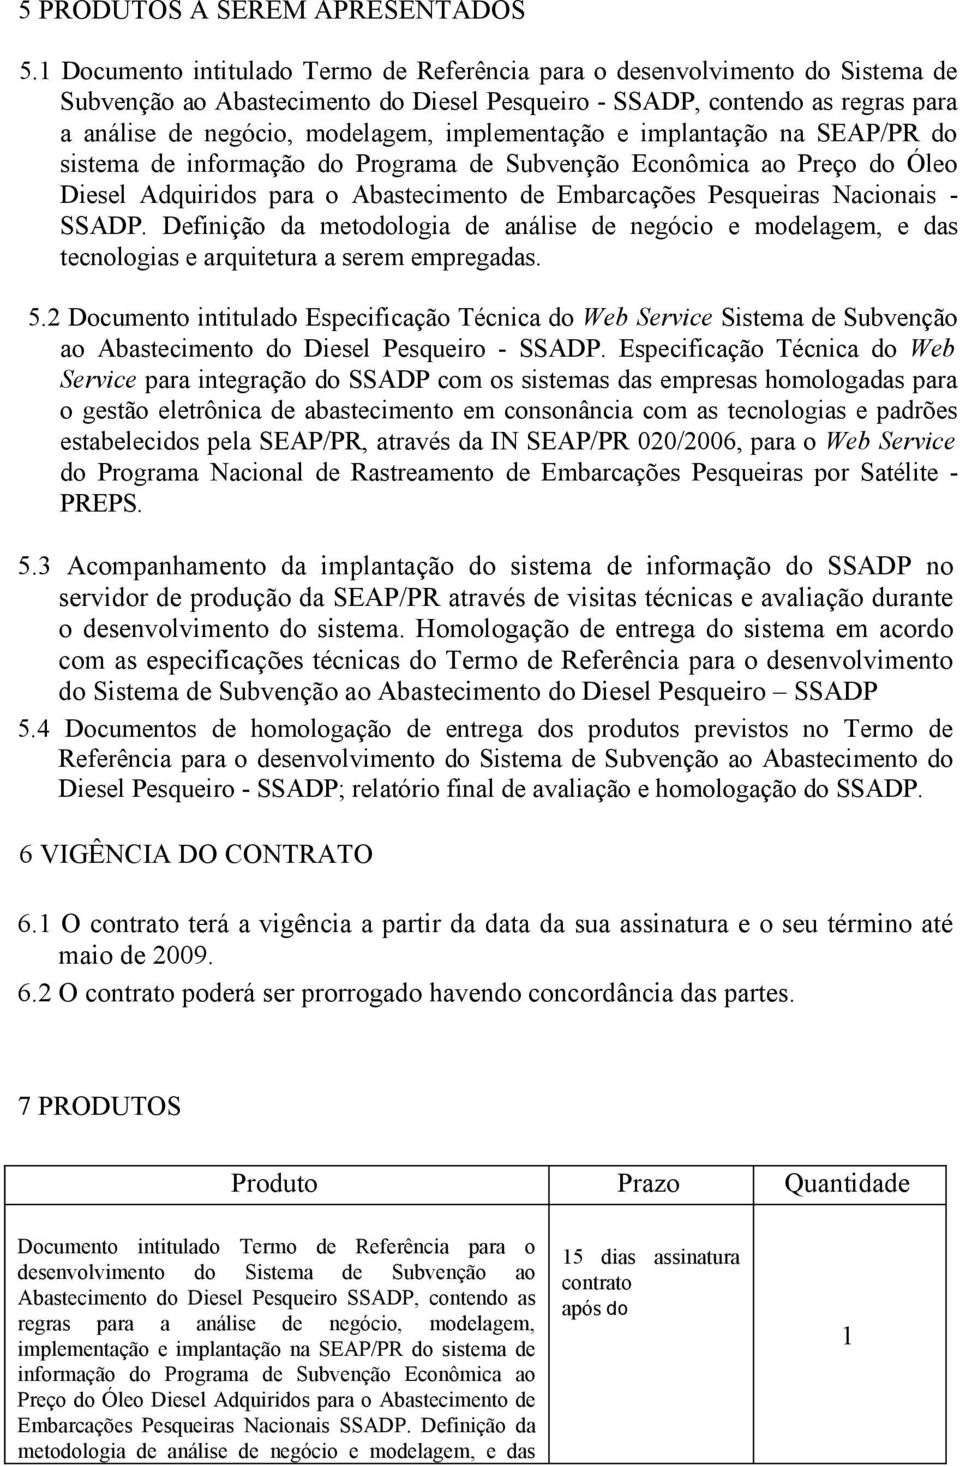 implementação e implantação na SEAP/PR do sistema de informação do Programa de Subvenção Econômica ao Preço do Óleo Diesel Adquiridos para o Abastecimento de Embarcações Pesqueiras Nacionais - SSADP.